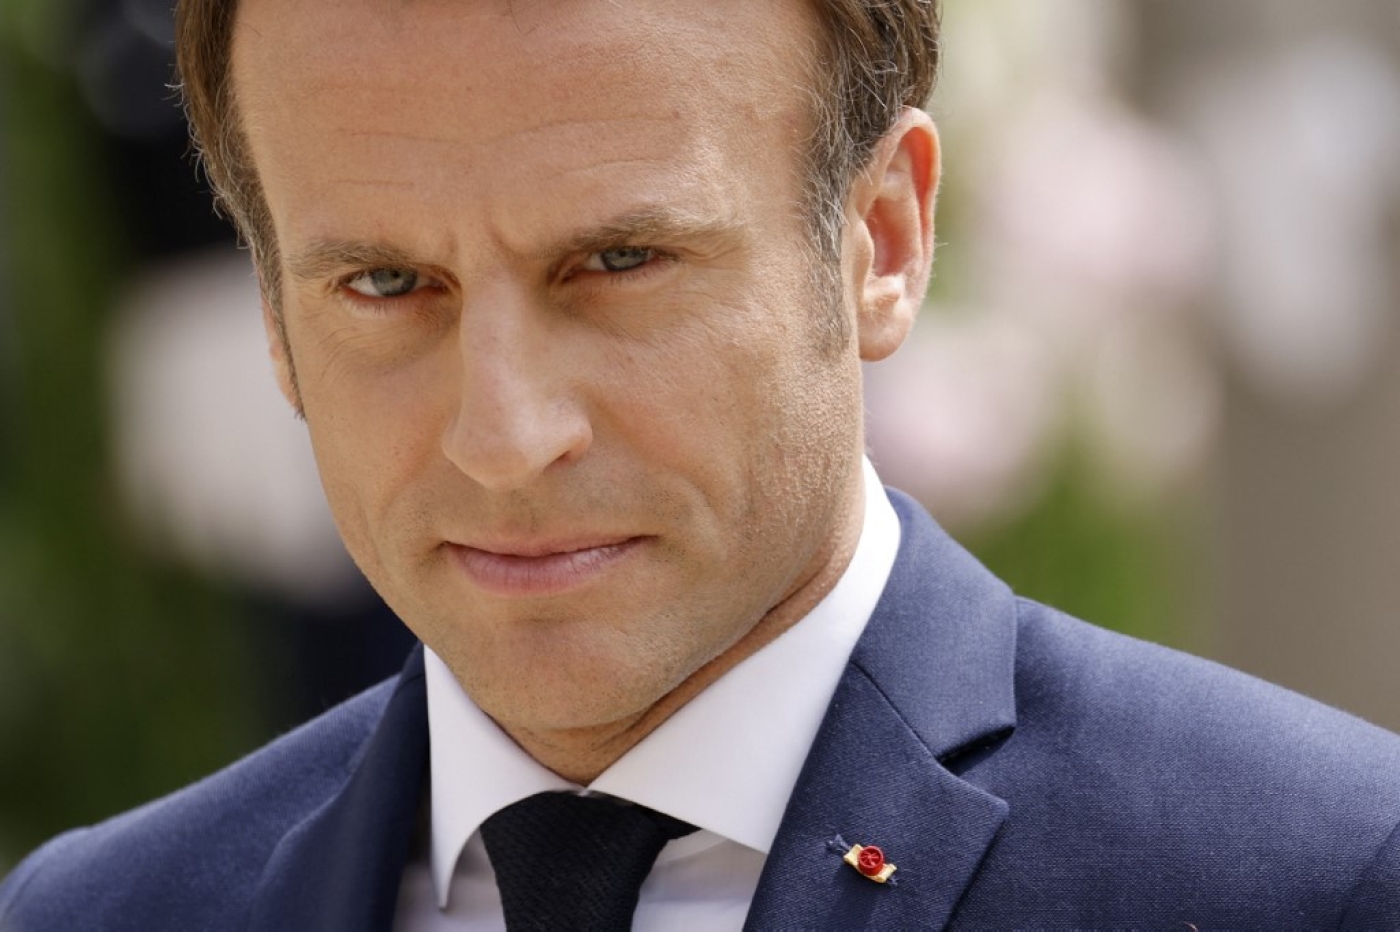 Sous le mandat du président actuel Emmanuel Macron, la France a basculé dans un autoritarisme qui cible en particulier les musulmans (AFP/Ludovic Marin)